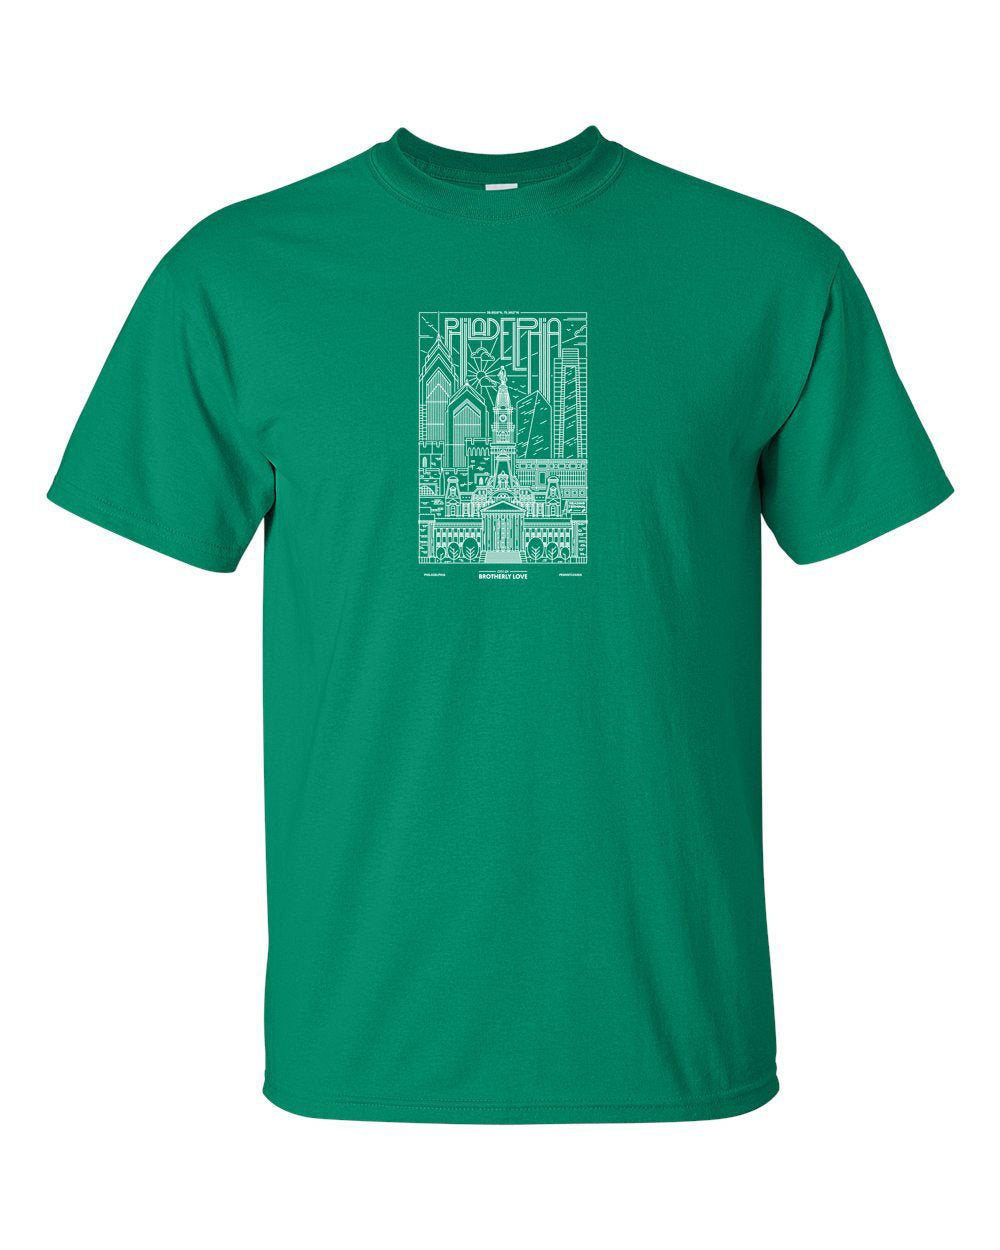 Philadelphia Skyline V2 (Football) Mens/Unisex T-Shirt